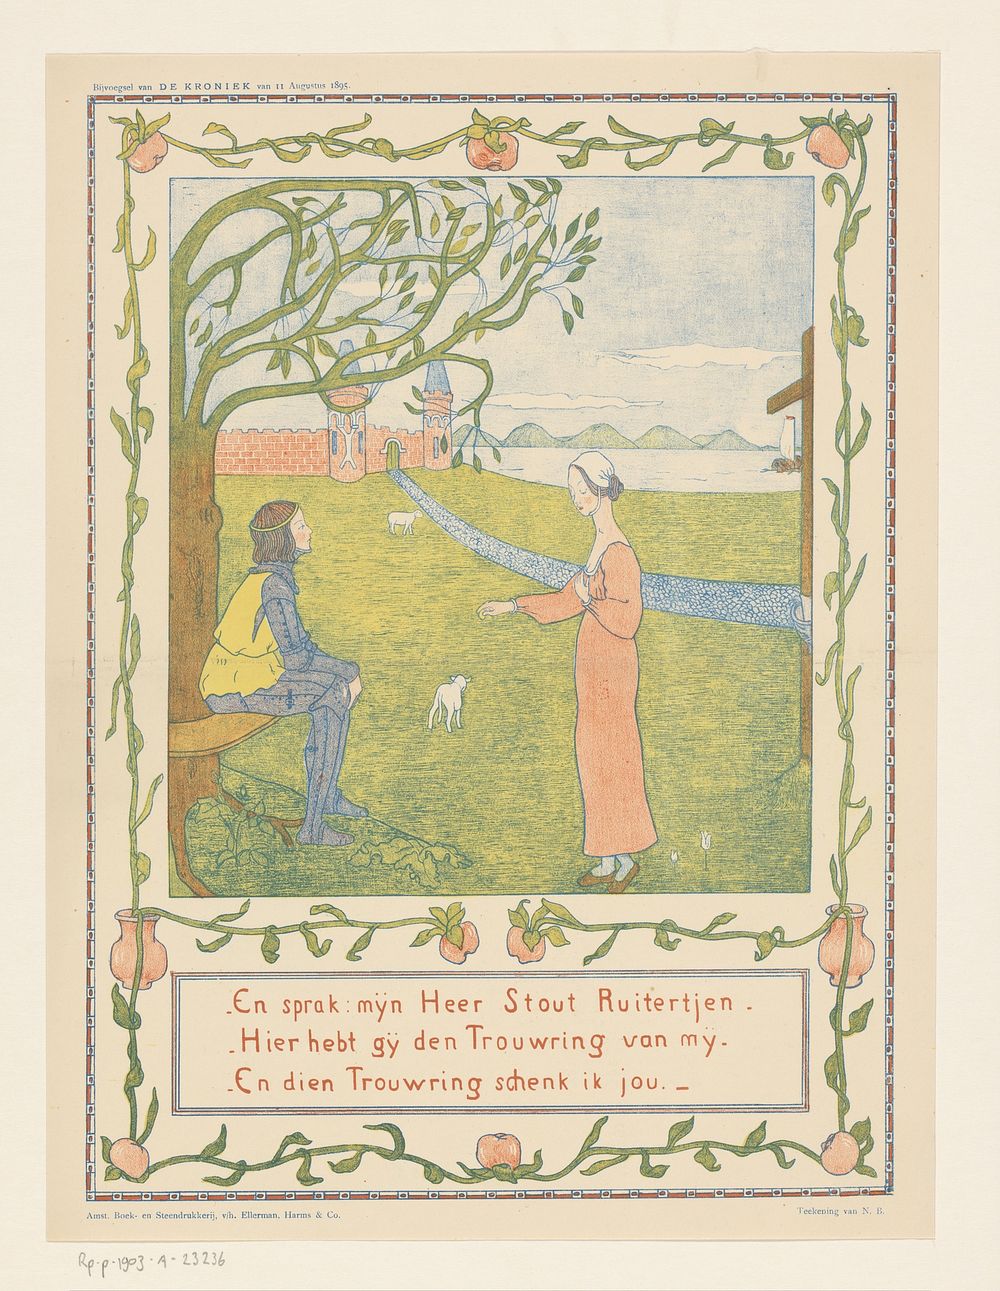 Vrouw en geharnast man in een weide met lammeren (1885) by Nelly Bodenheim and Harms and Co Ellerman